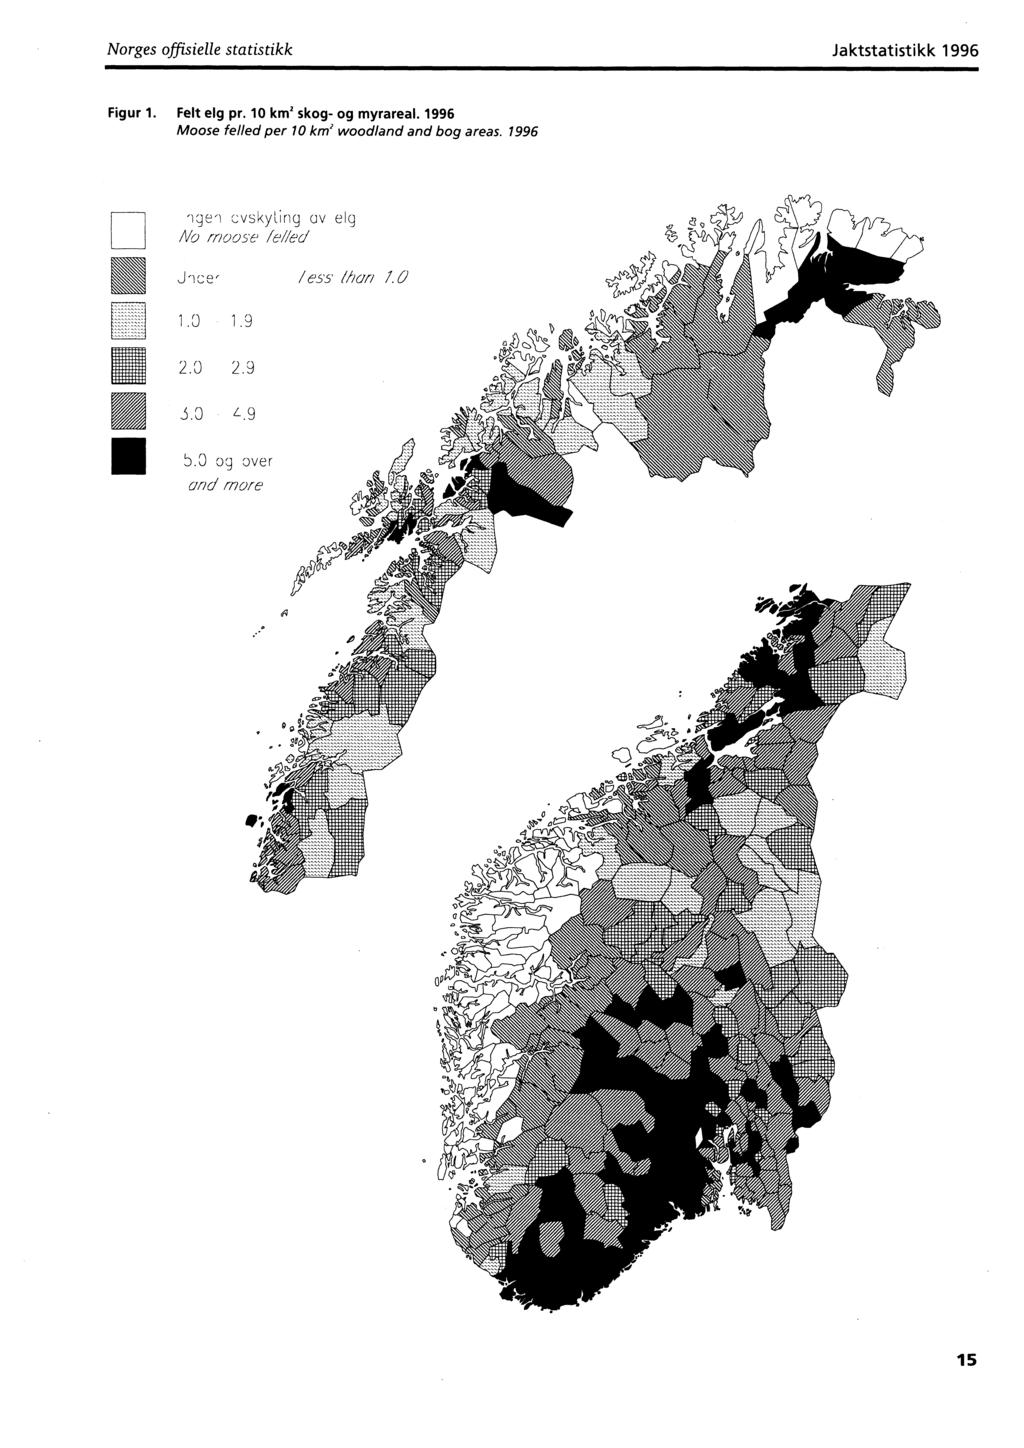 Norges offisielle statistikk Jaktstatistikk Figur 1. Felt elg pr. 10 km skog- og myrareal.